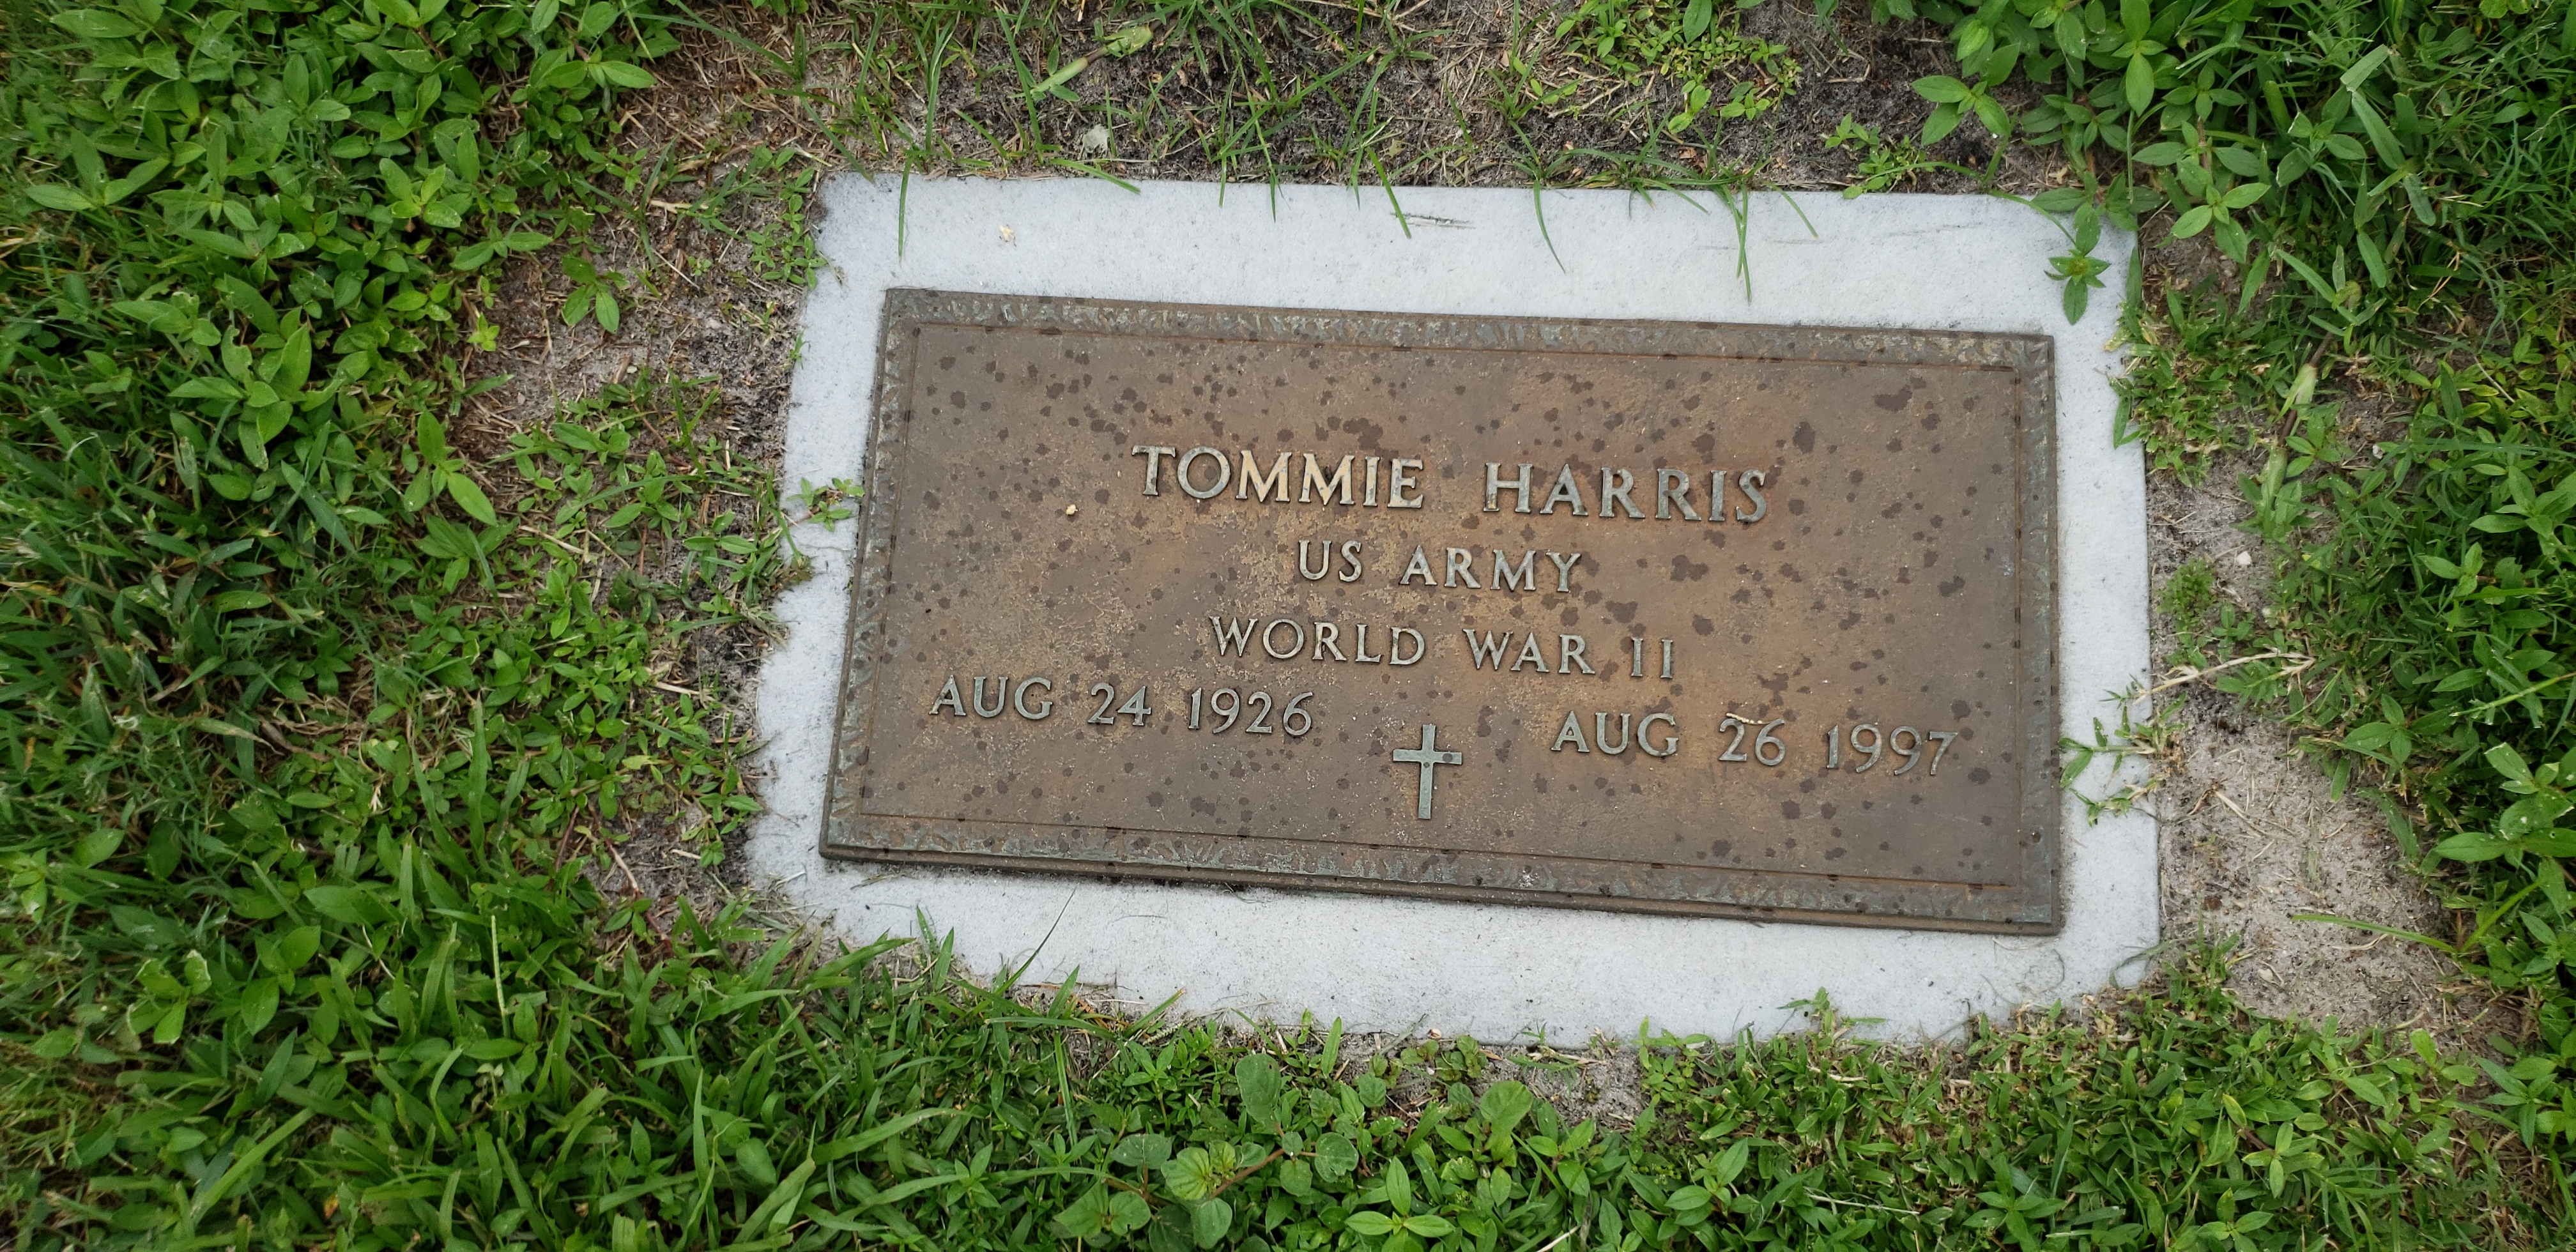 Tommie Harris